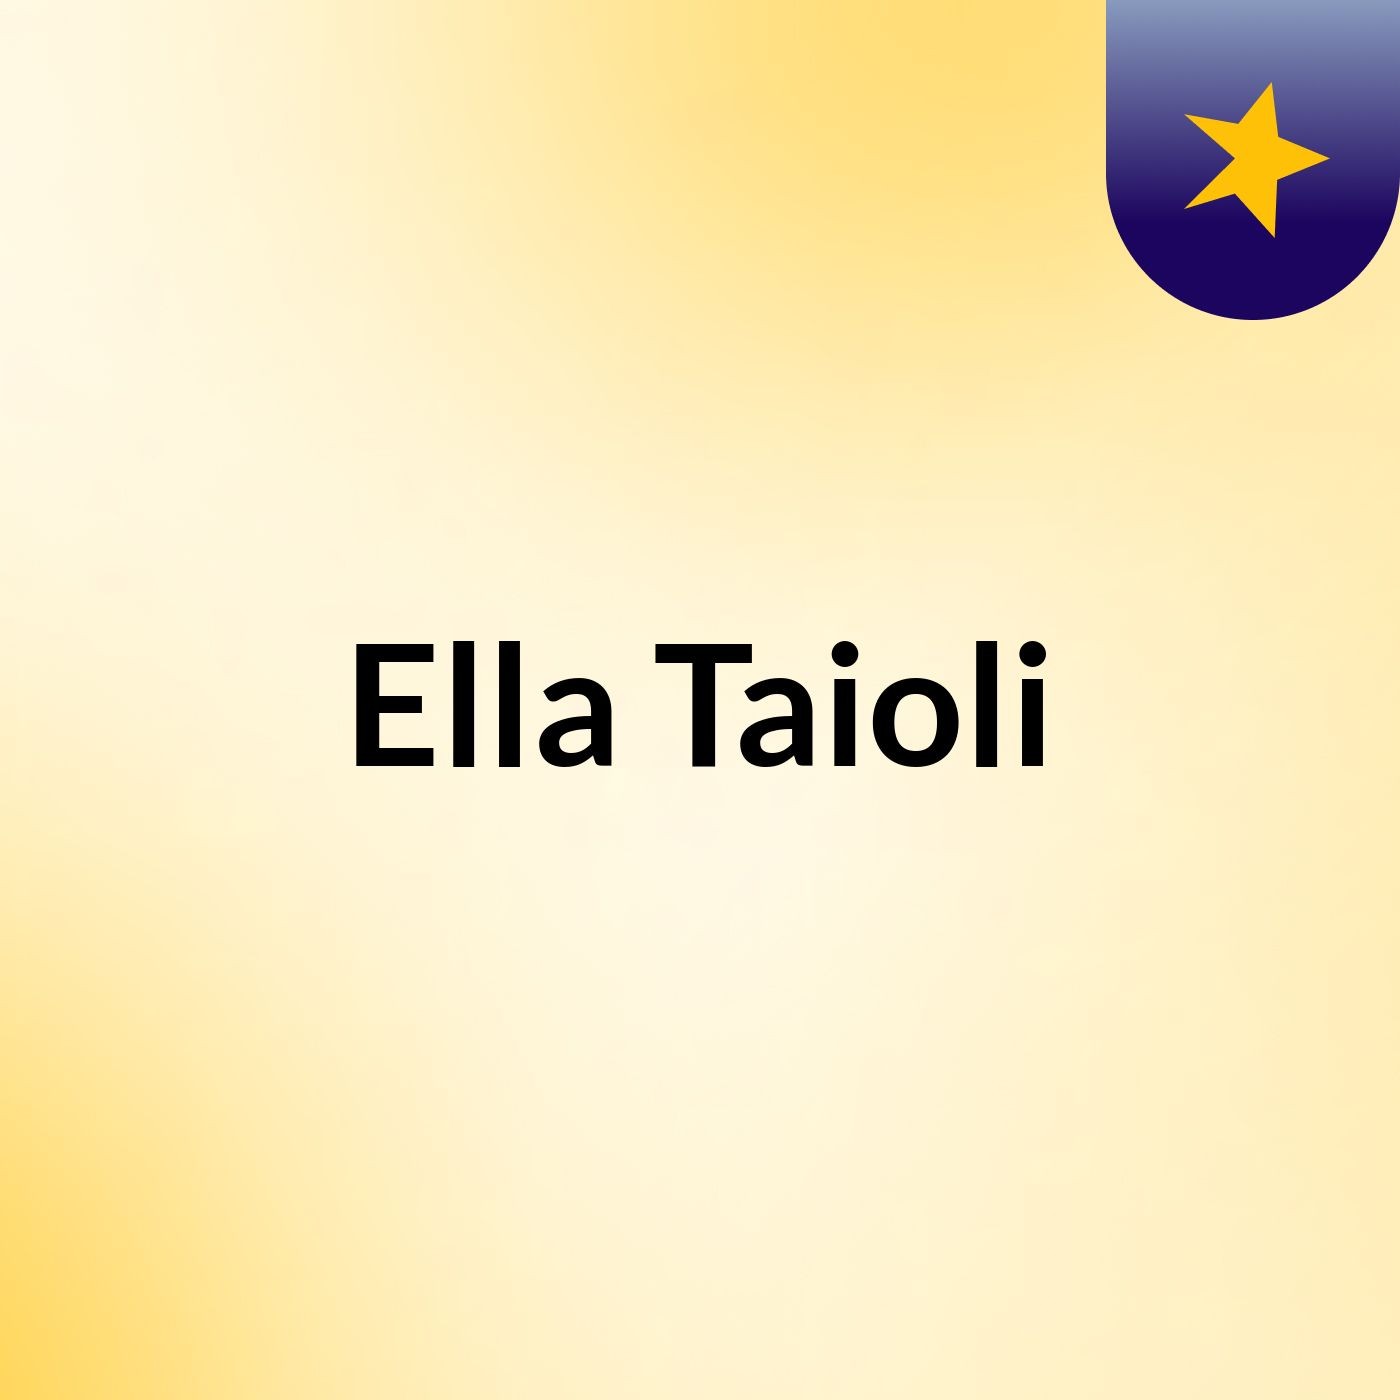 Ella Taioli